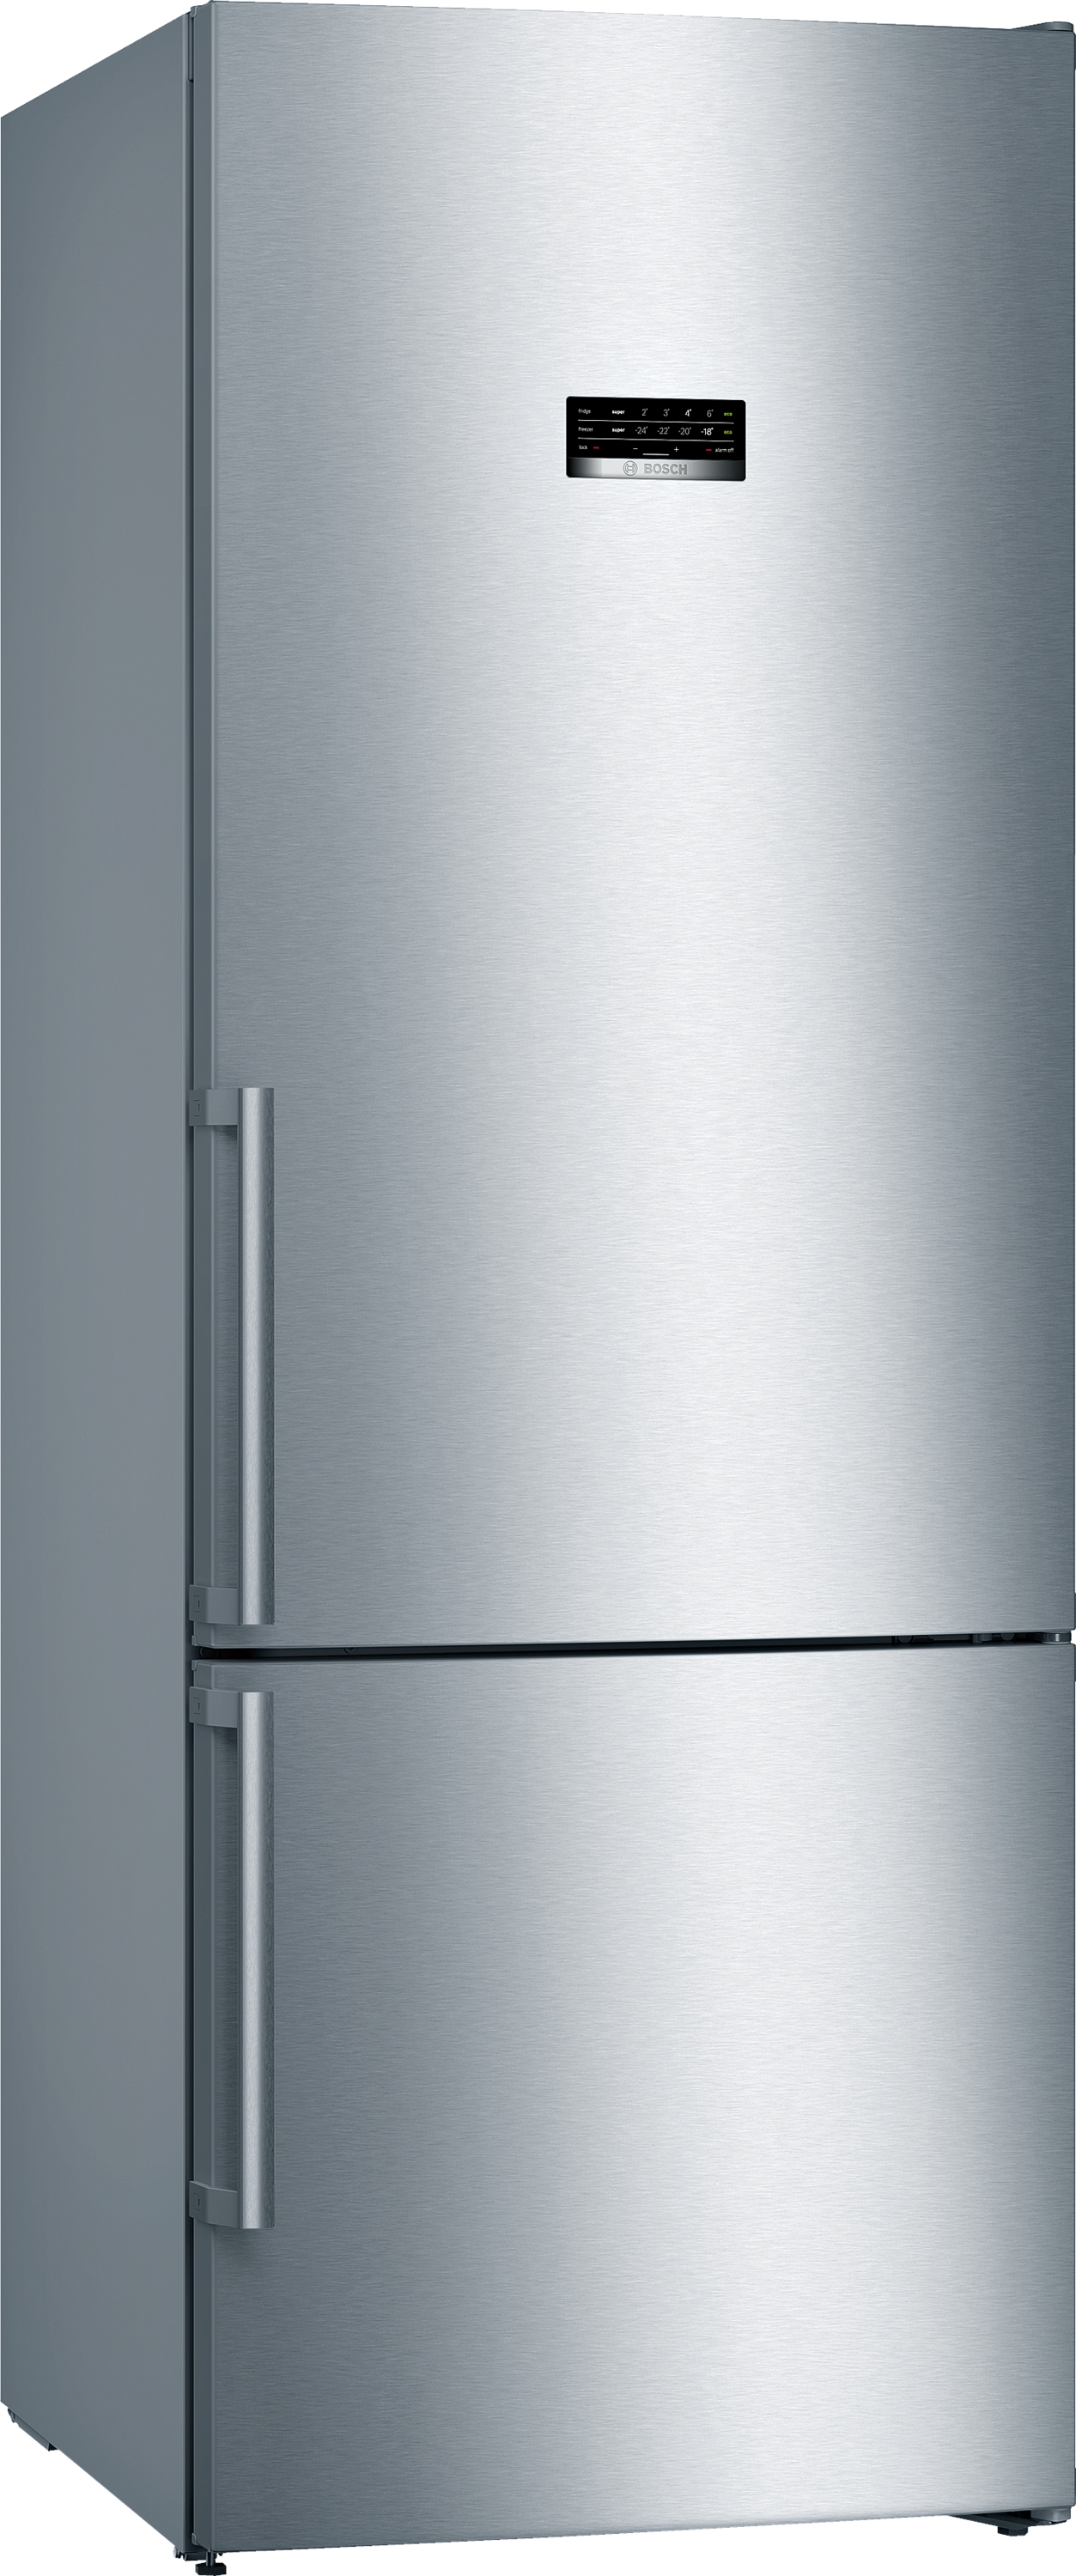 KGN56XIDP, Samostojeći frižider sa zamrzivačem dole